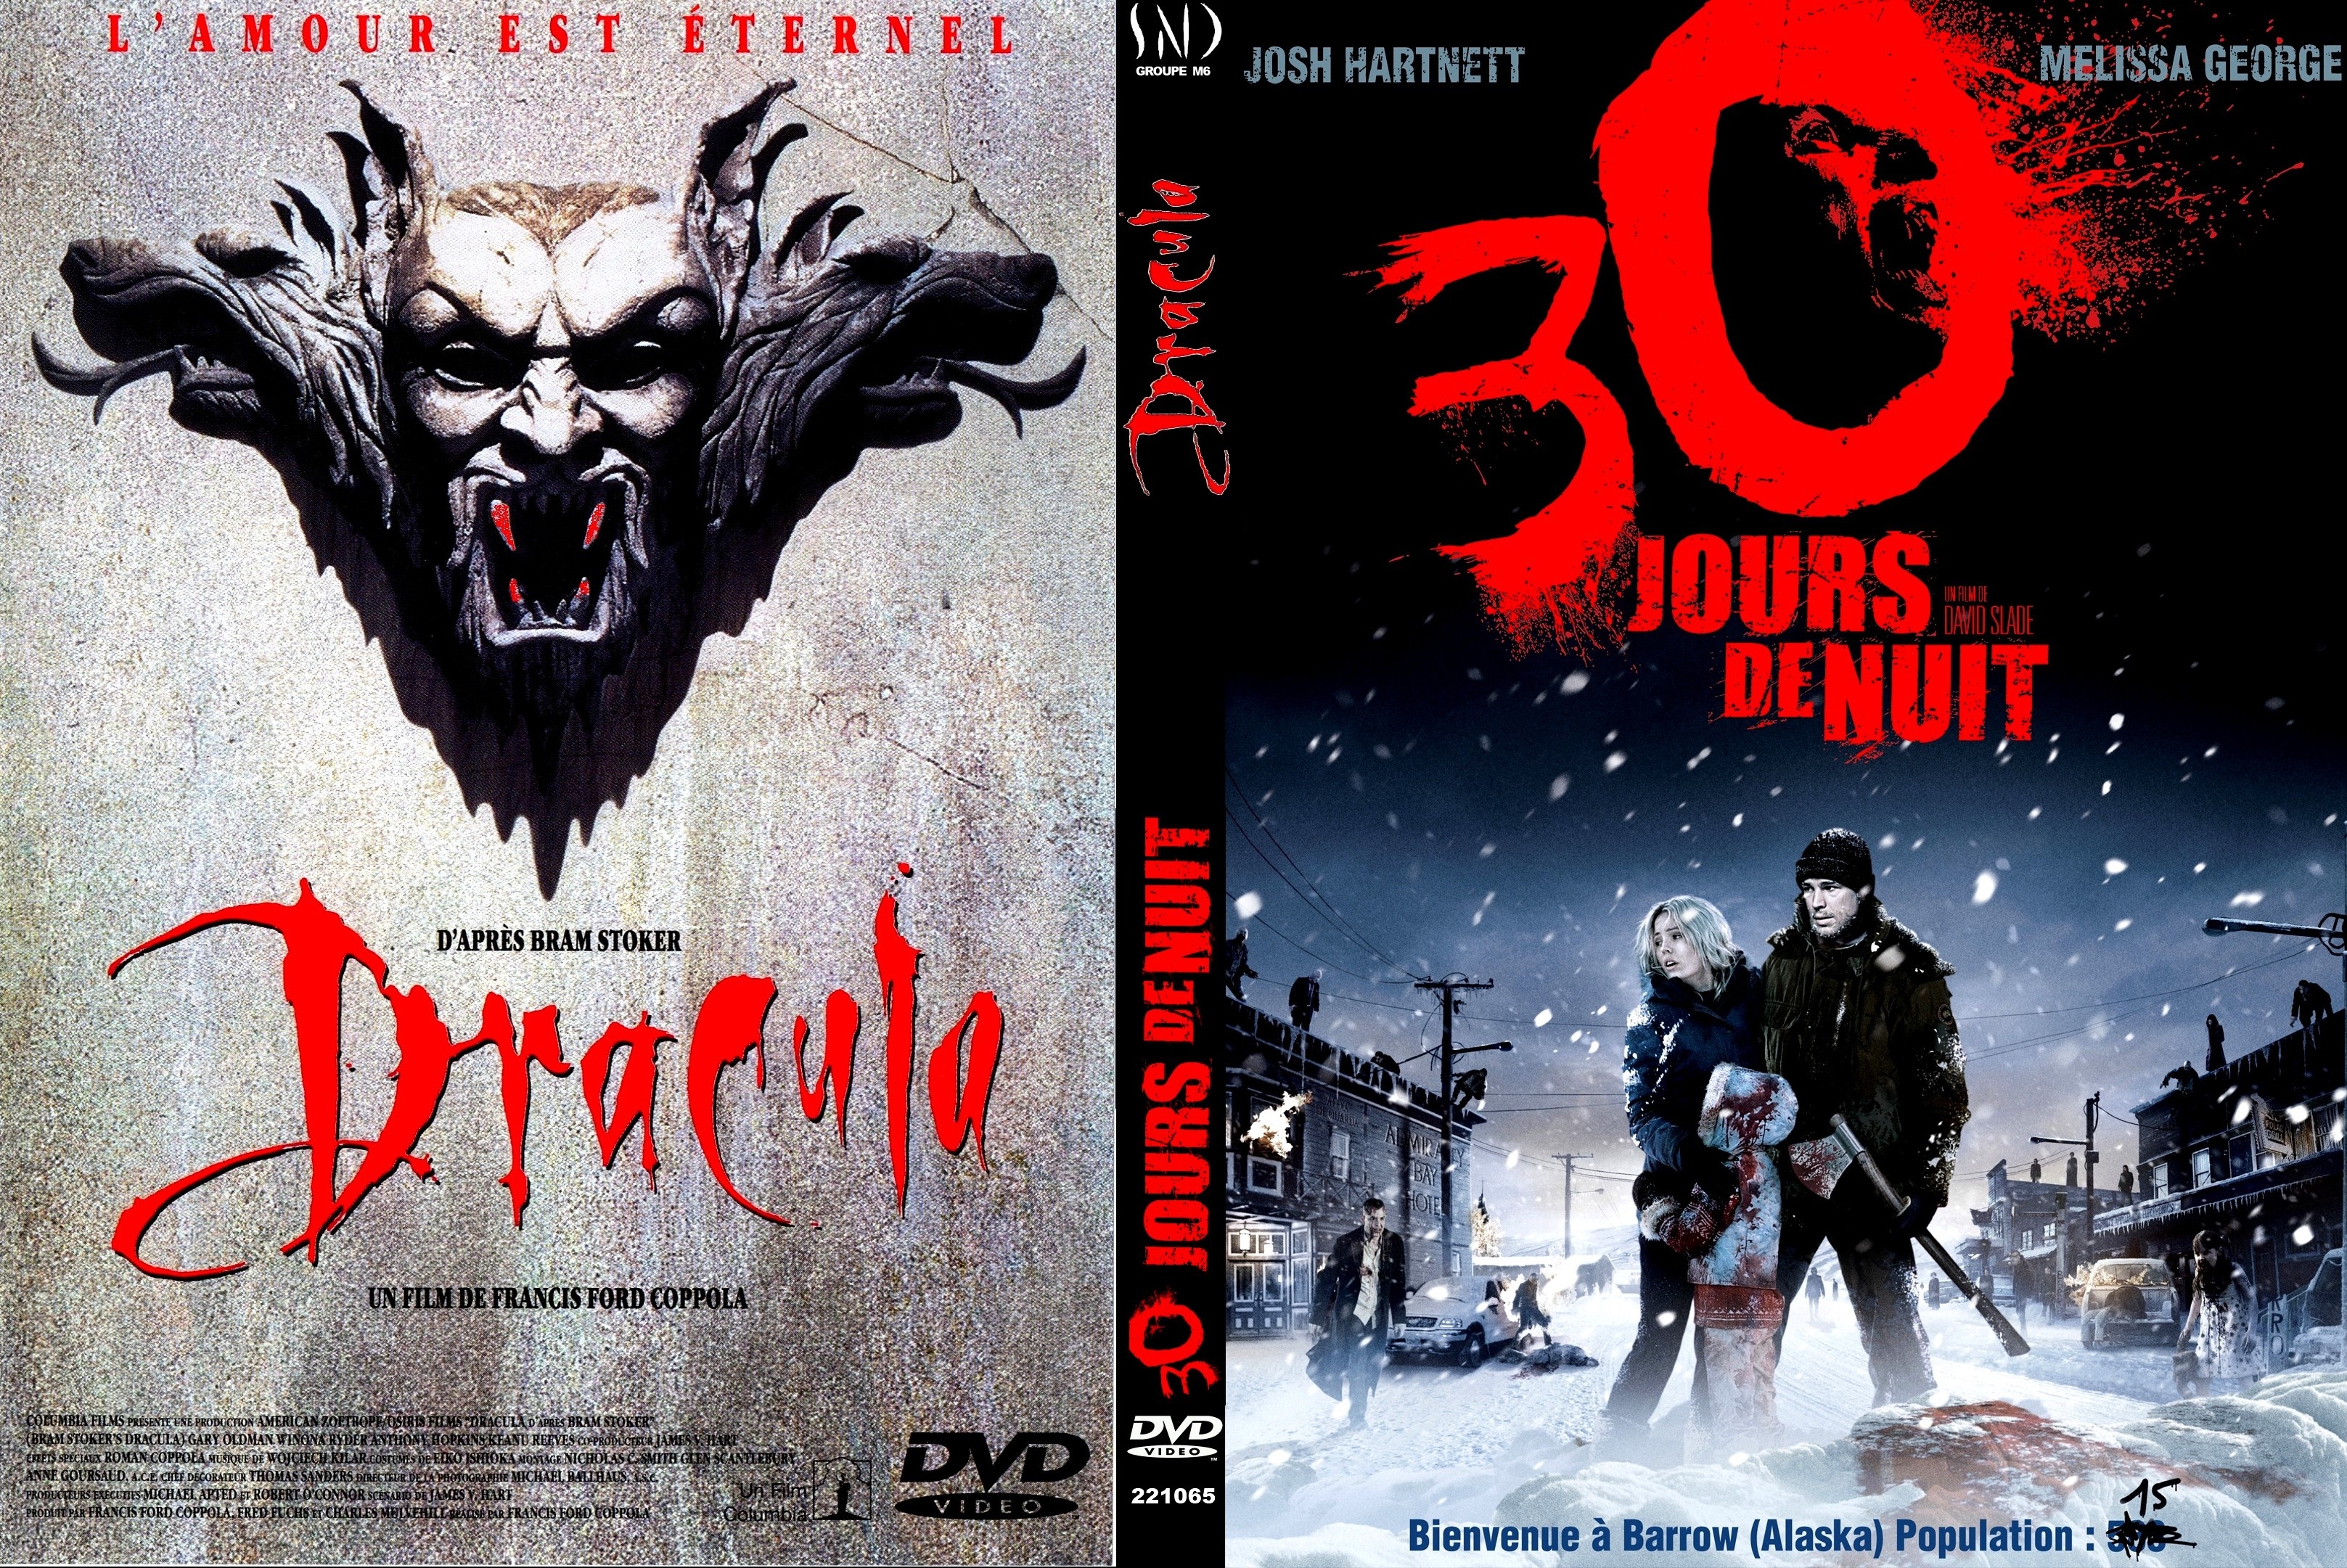 Jaquette DVD 30 jours de nuit + Dracula